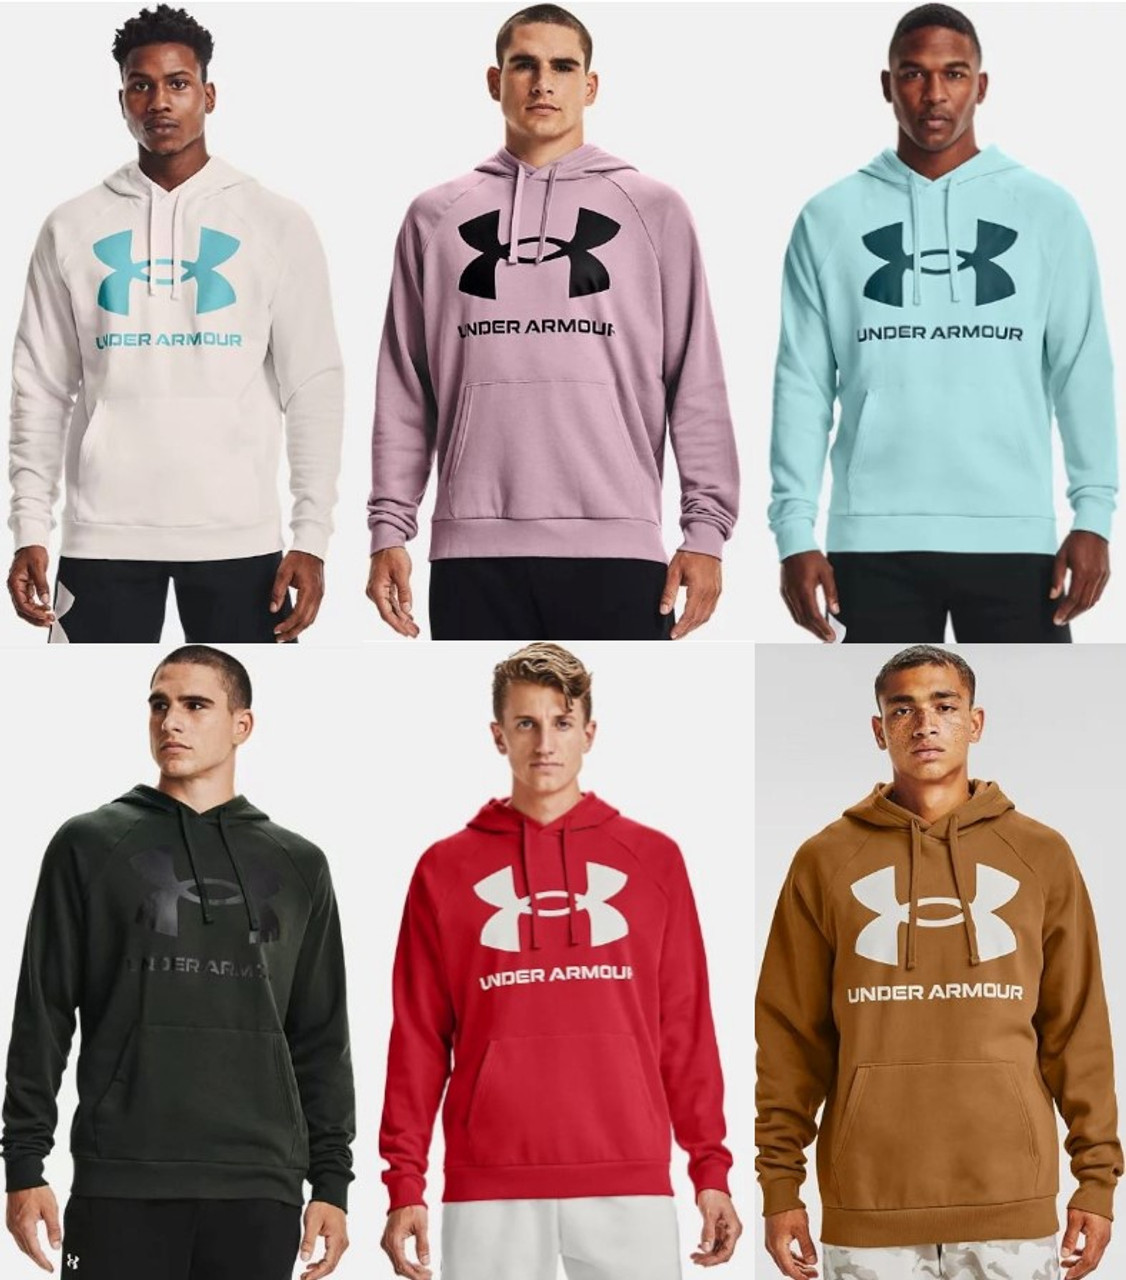 Men's UNDER ARMOUR Hoodies, Sweatshirts & Zip Up